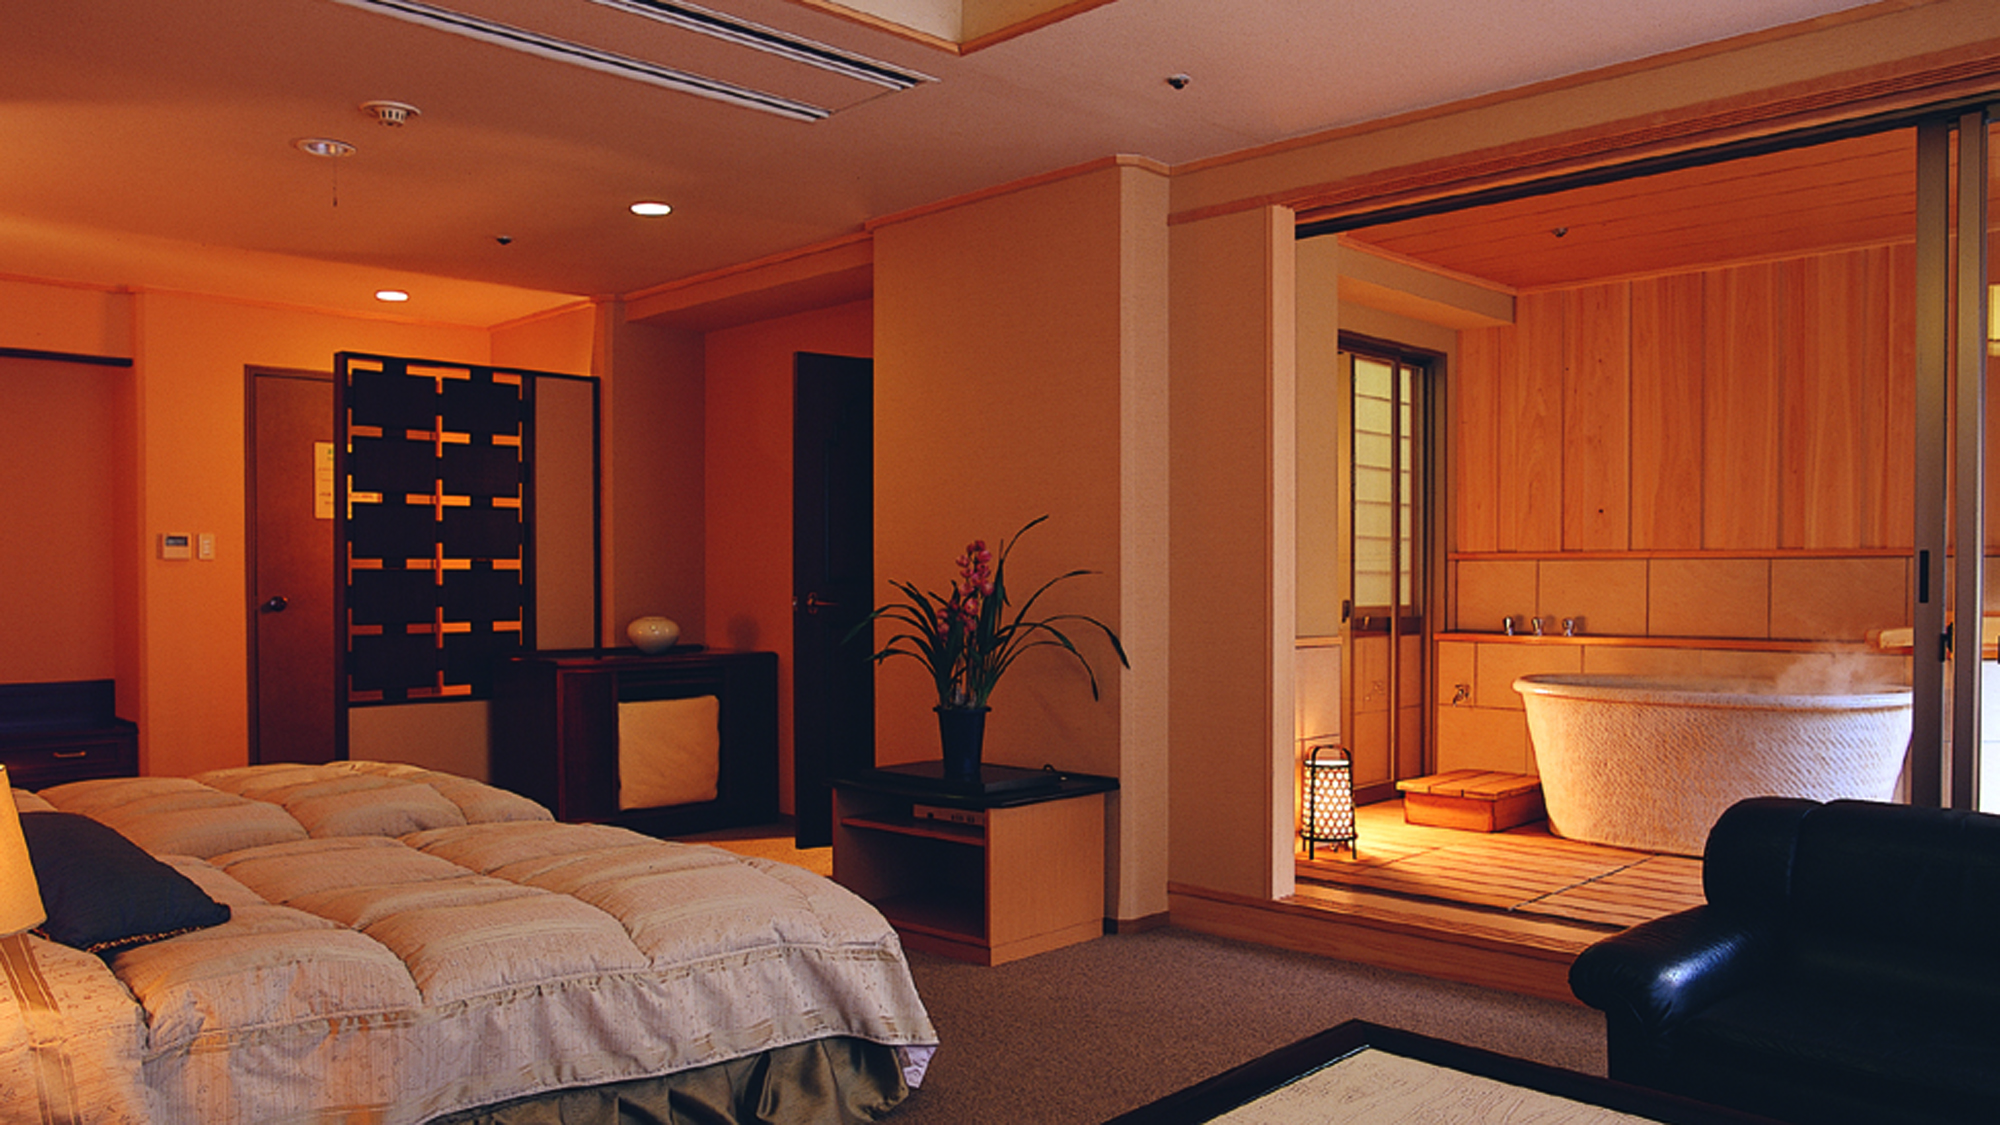 【展望露天風呂付客室-洋室-】ライトアップした展望露天風呂付客室で大人な空間を。